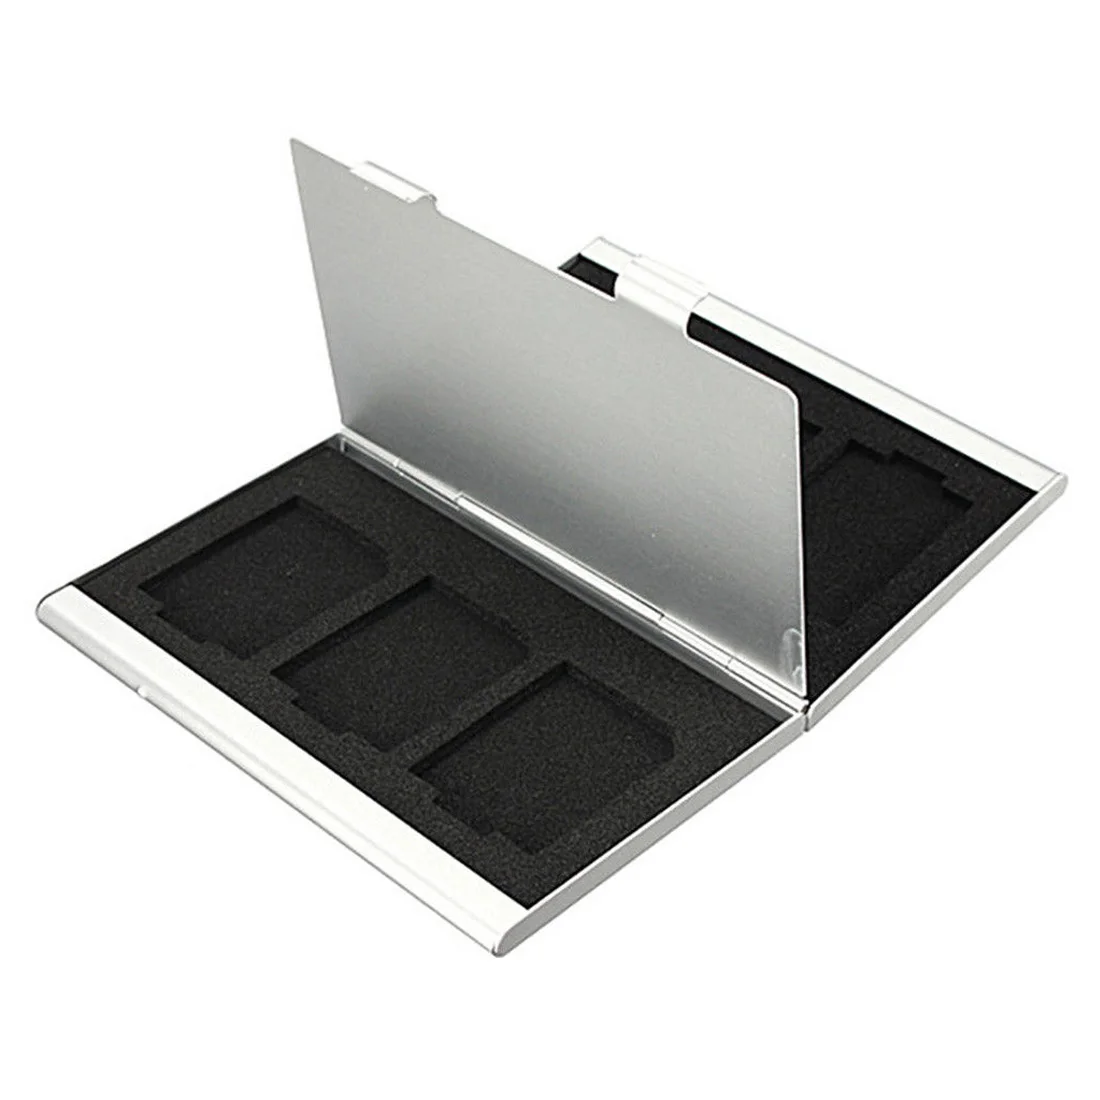 6 слотов двойной стол алюминиевый ящик для хранения SD SDHC SDXC MMC чехол для держателя карты памяти протектор